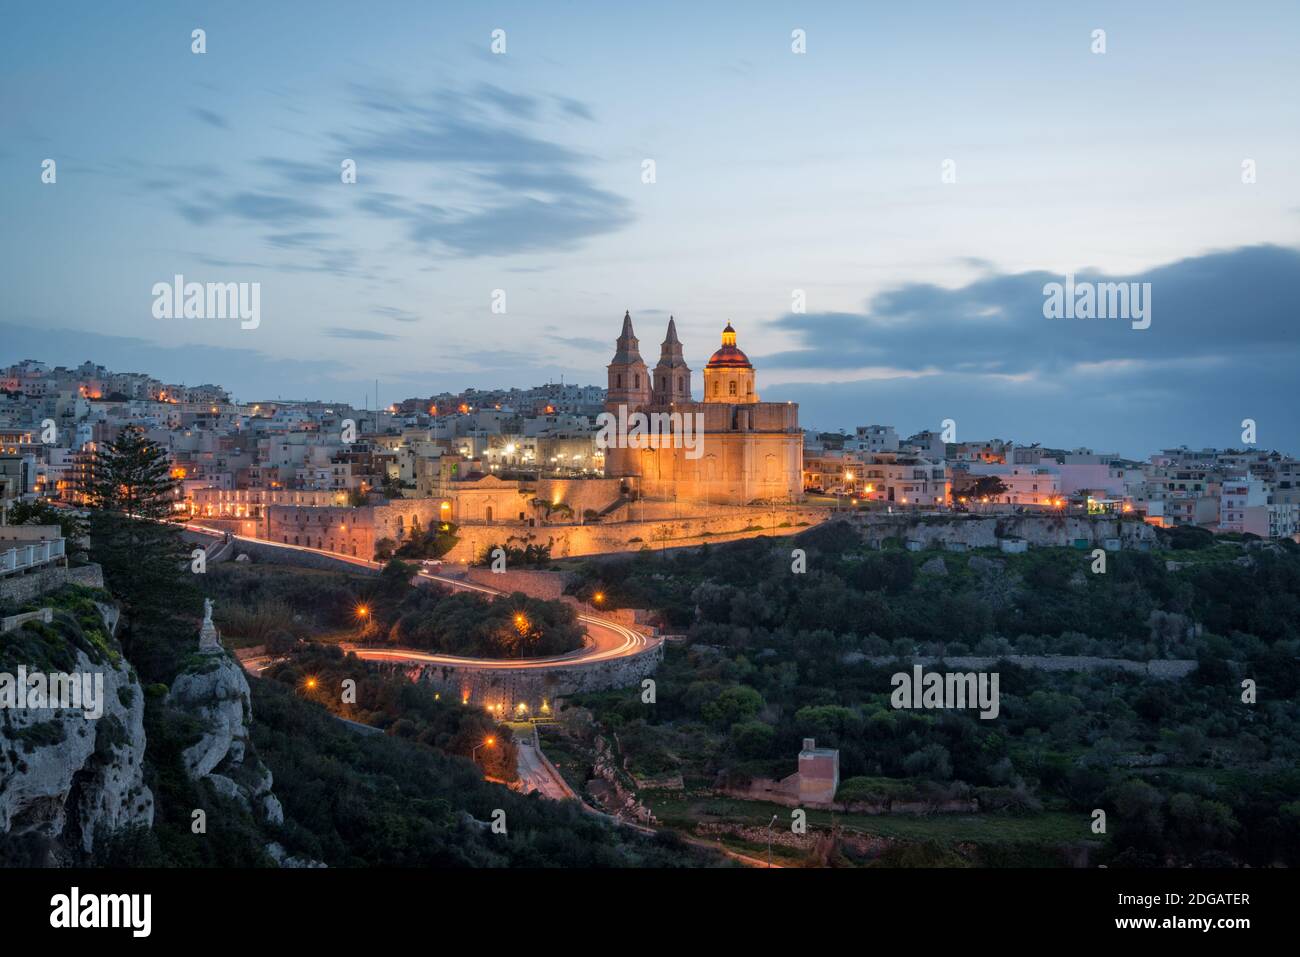 Sanctuaire de notre-Dame de Mellieħa, la cathédrale au sommet d'une colline à Mellieha, Malte la nuit Banque D'Images